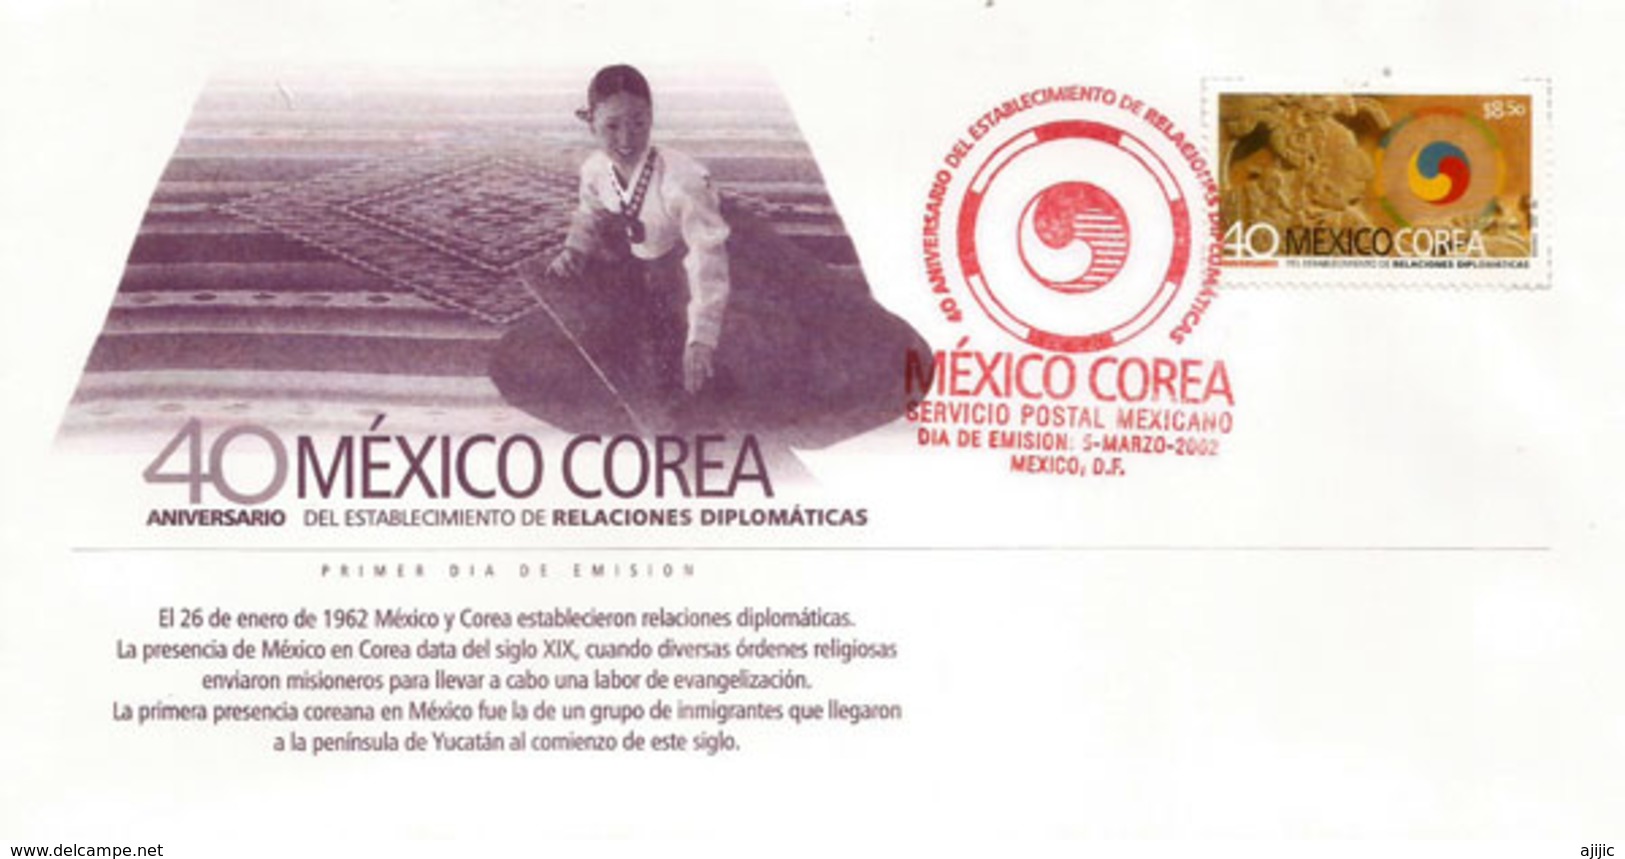 Mexico-Corea 40 Años Relaciones Diplomaticas, FDC Mexico - México